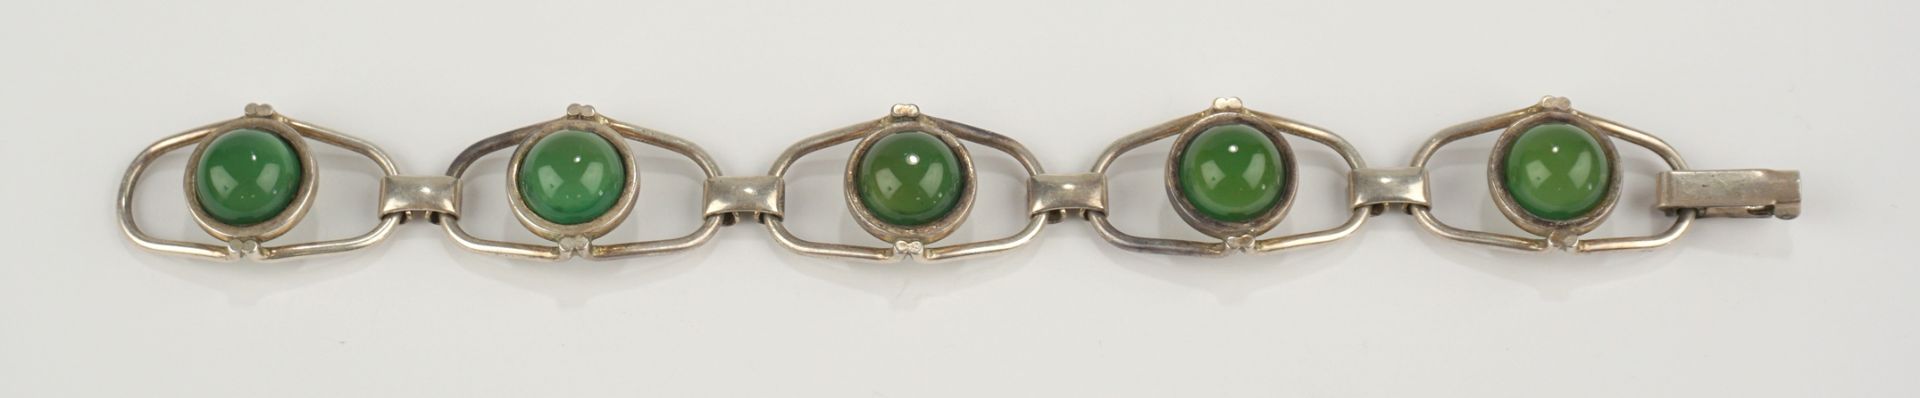 Armband mit grünen Steinen, Chrysopras?, Fischland, 835er Silber